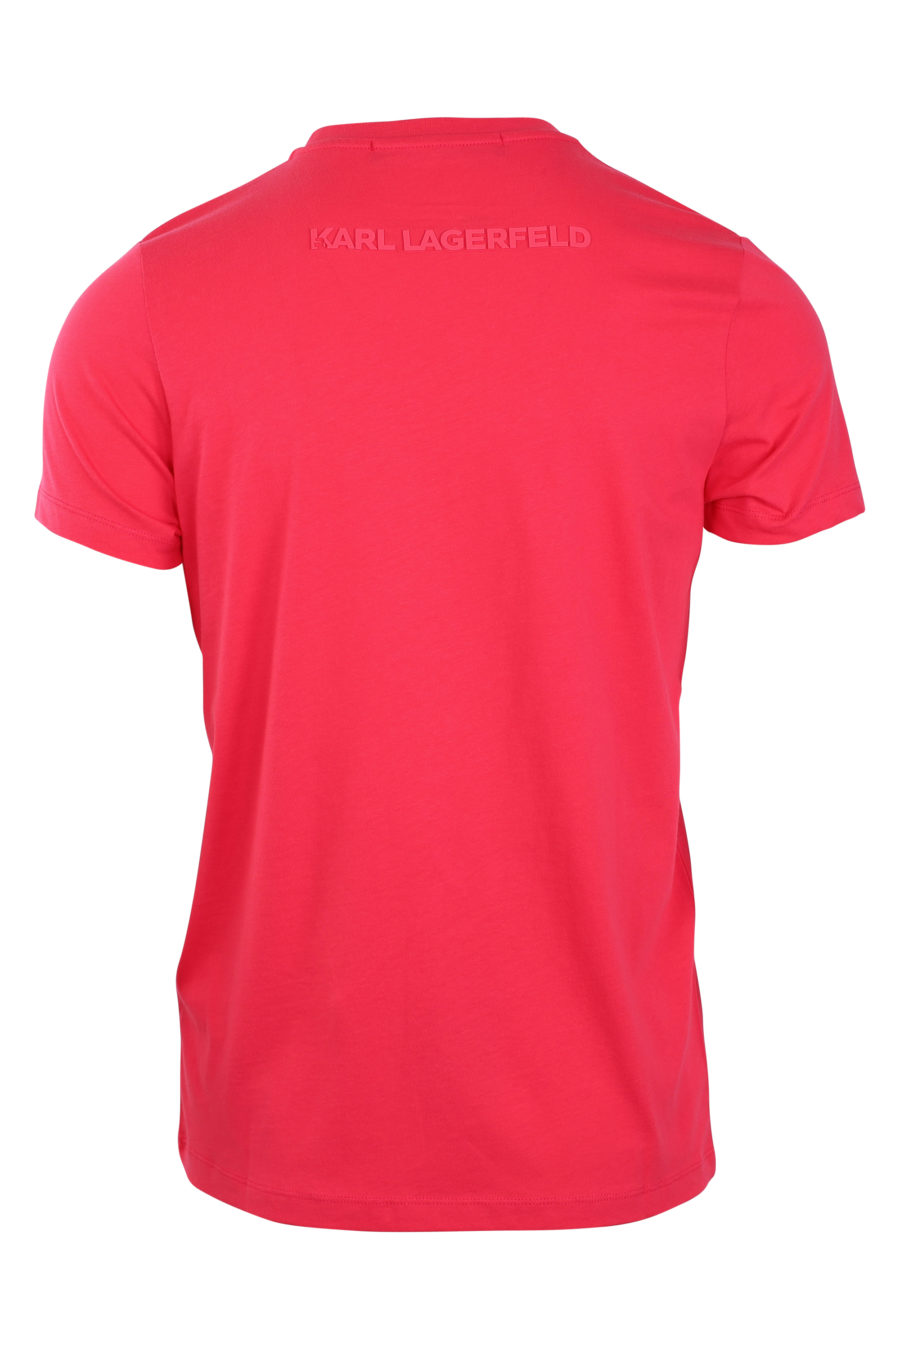 Camiseta fucsia con logo en silueta monocromático - IMG 0841